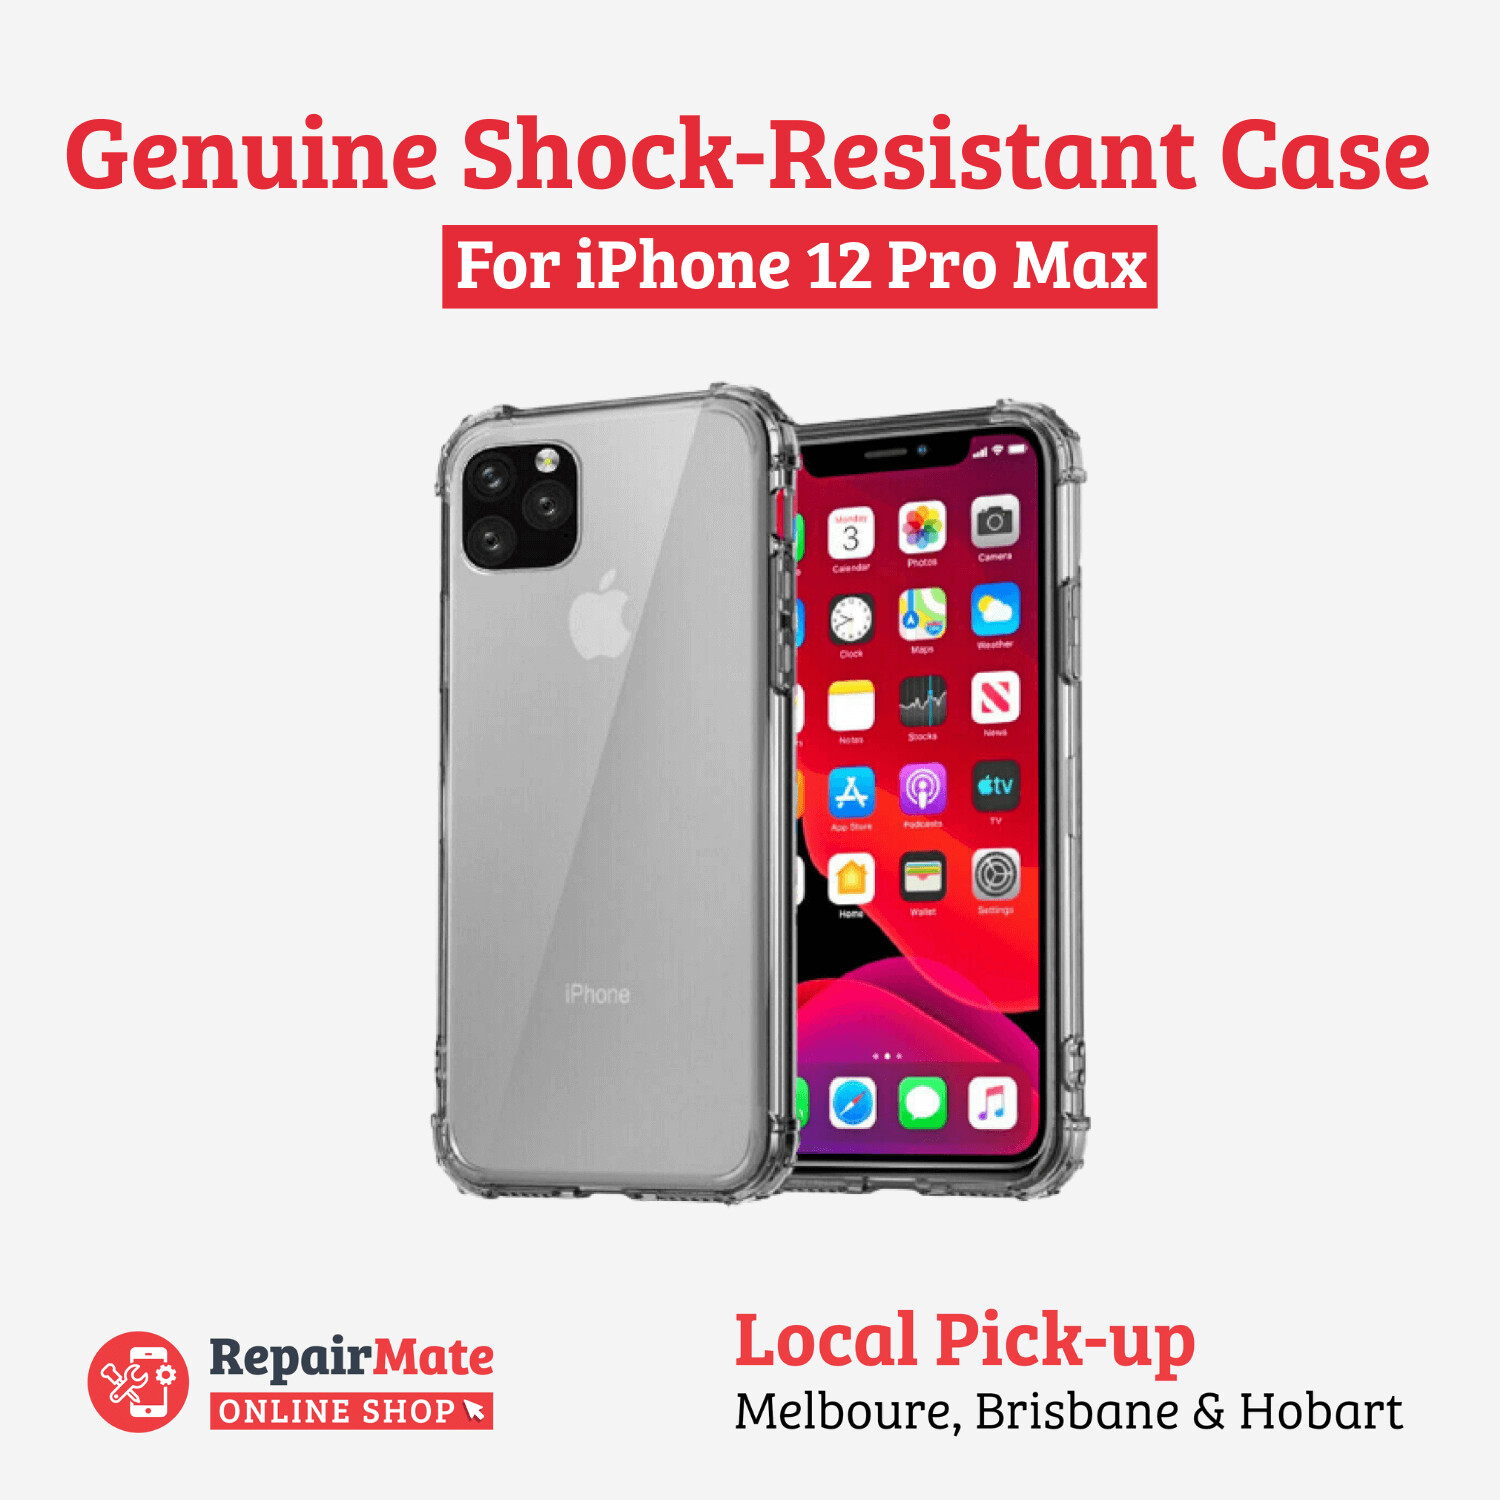 iPhone 12 Pro Max Genuine Shock-Resistant Case